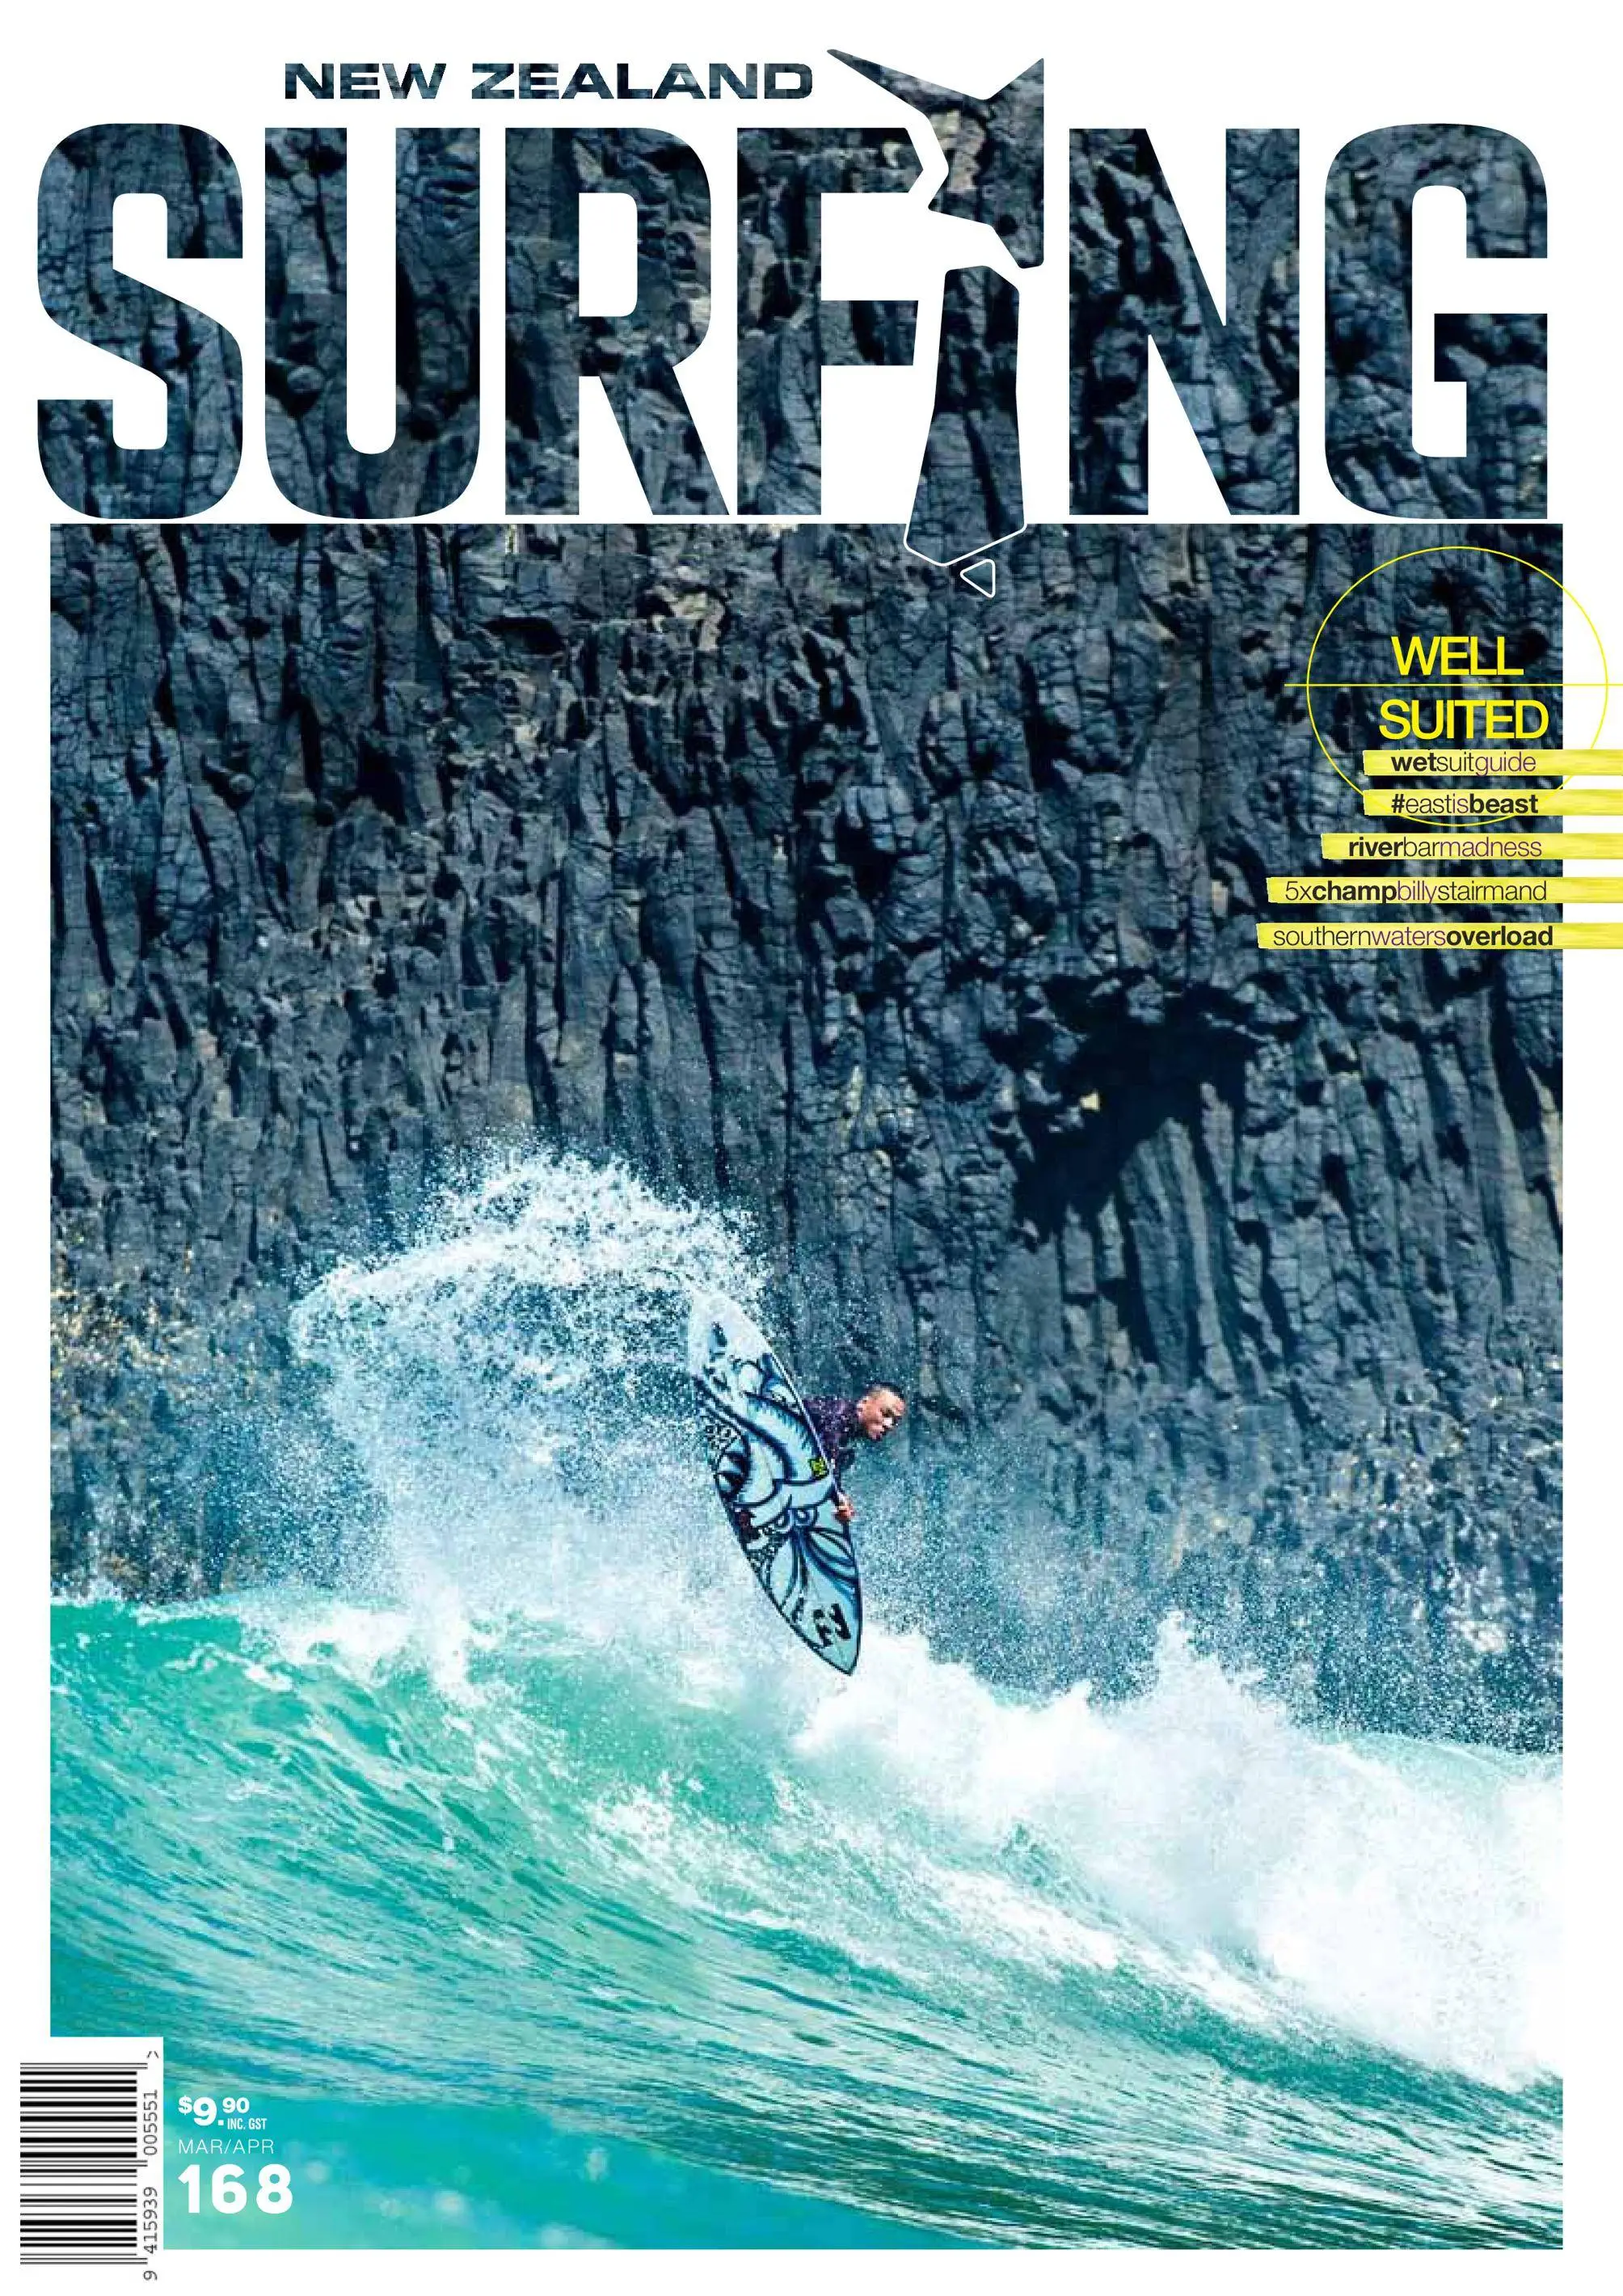 Magazine well. Серфинг в новой Зеландии.